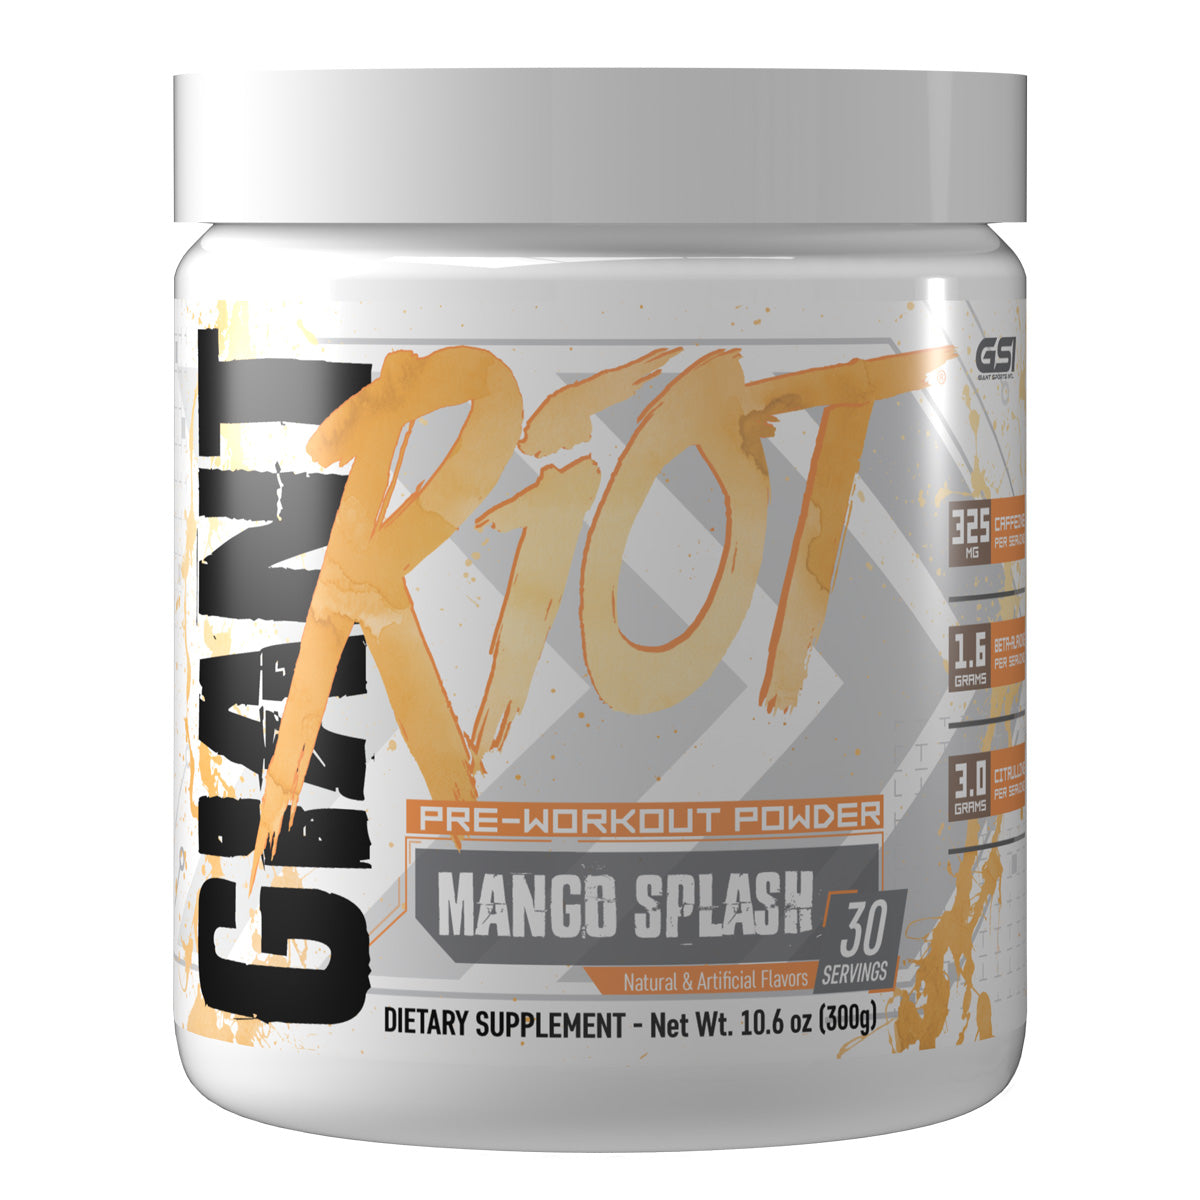 Riot Supplement pre workout powder Mango Splash